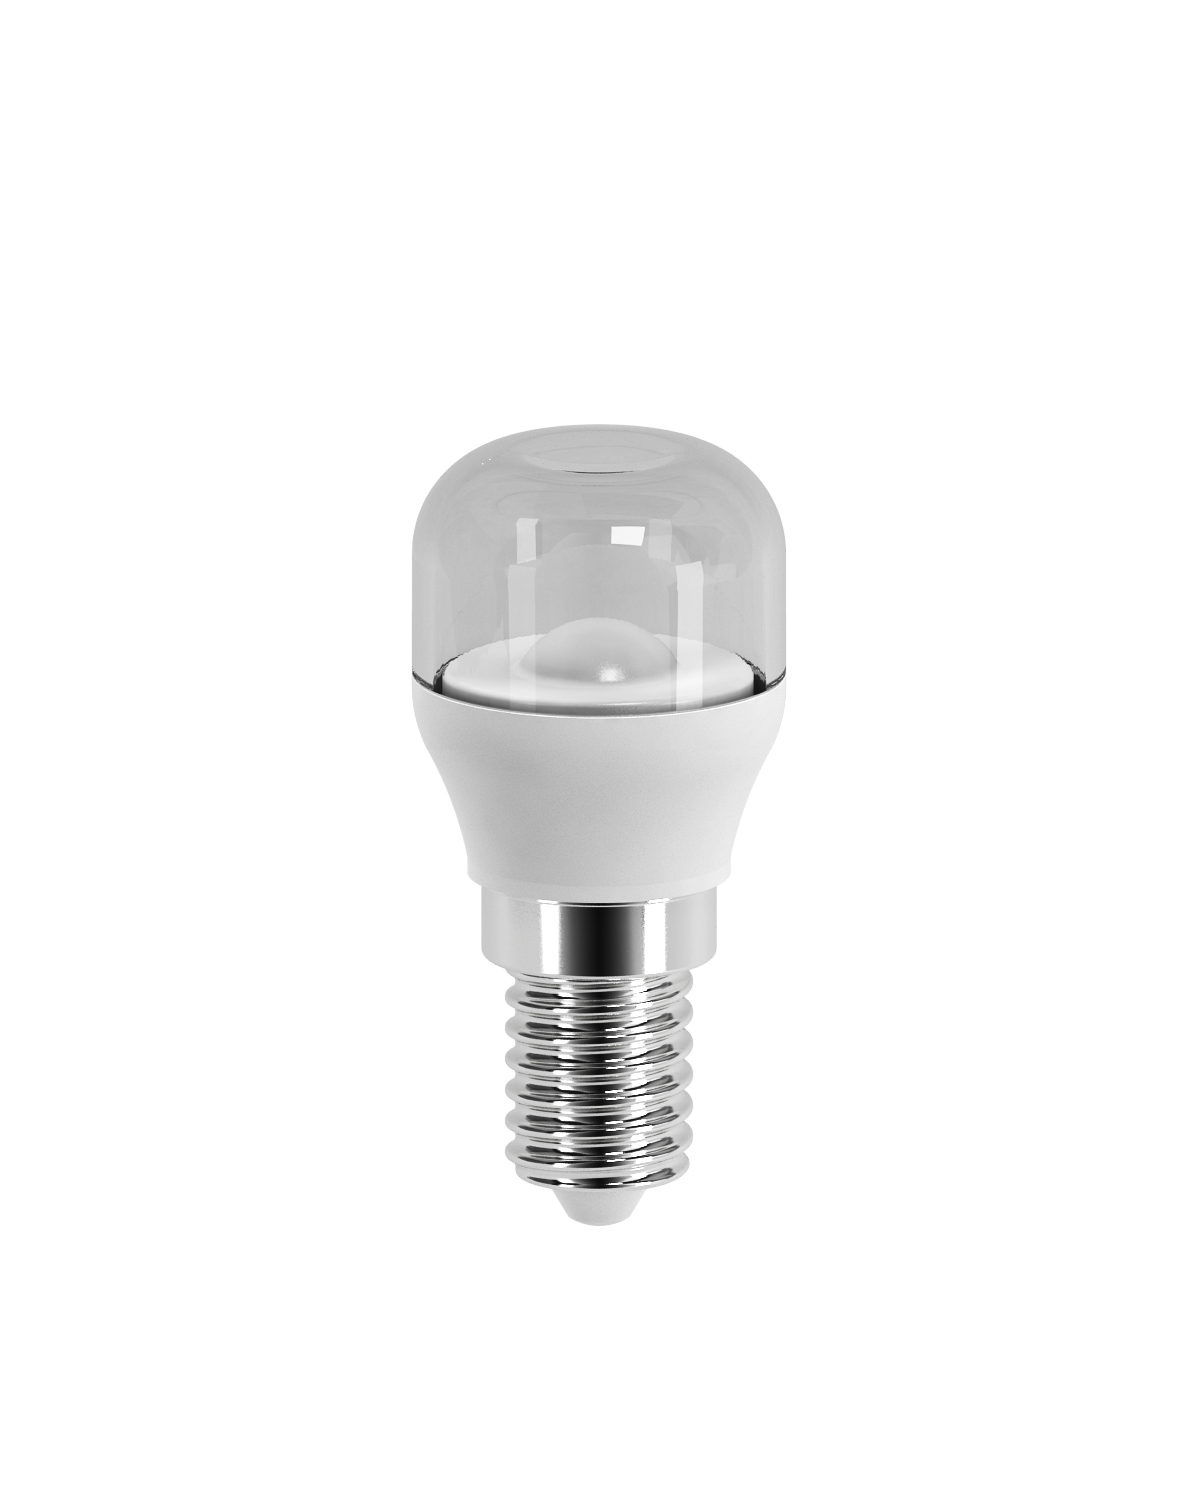 LED-lampa päronform